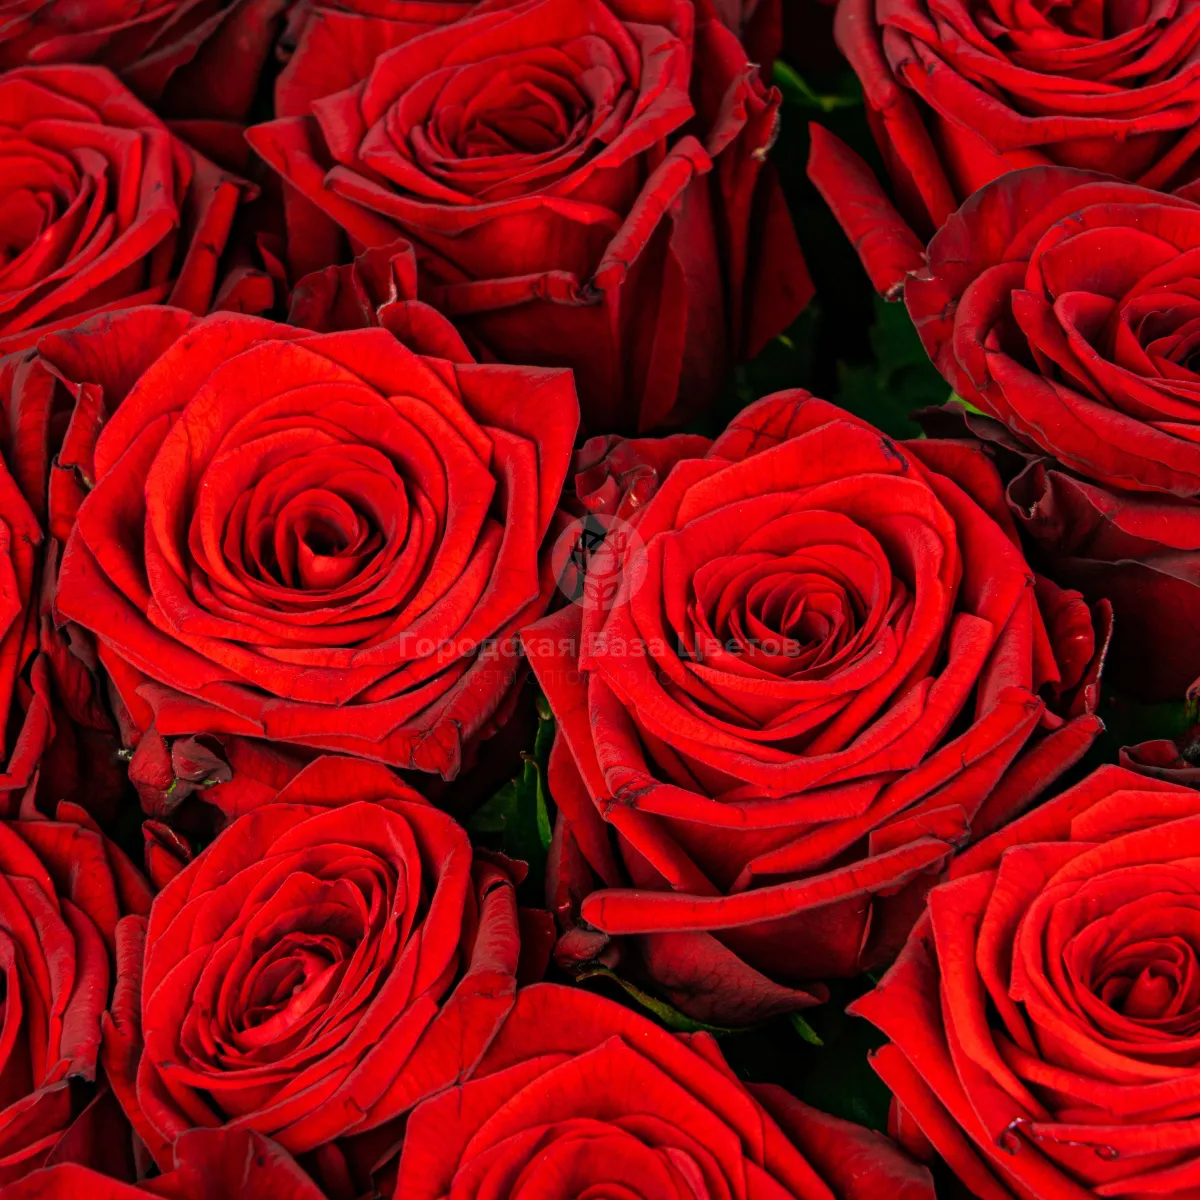 81 красная роза (70 см)